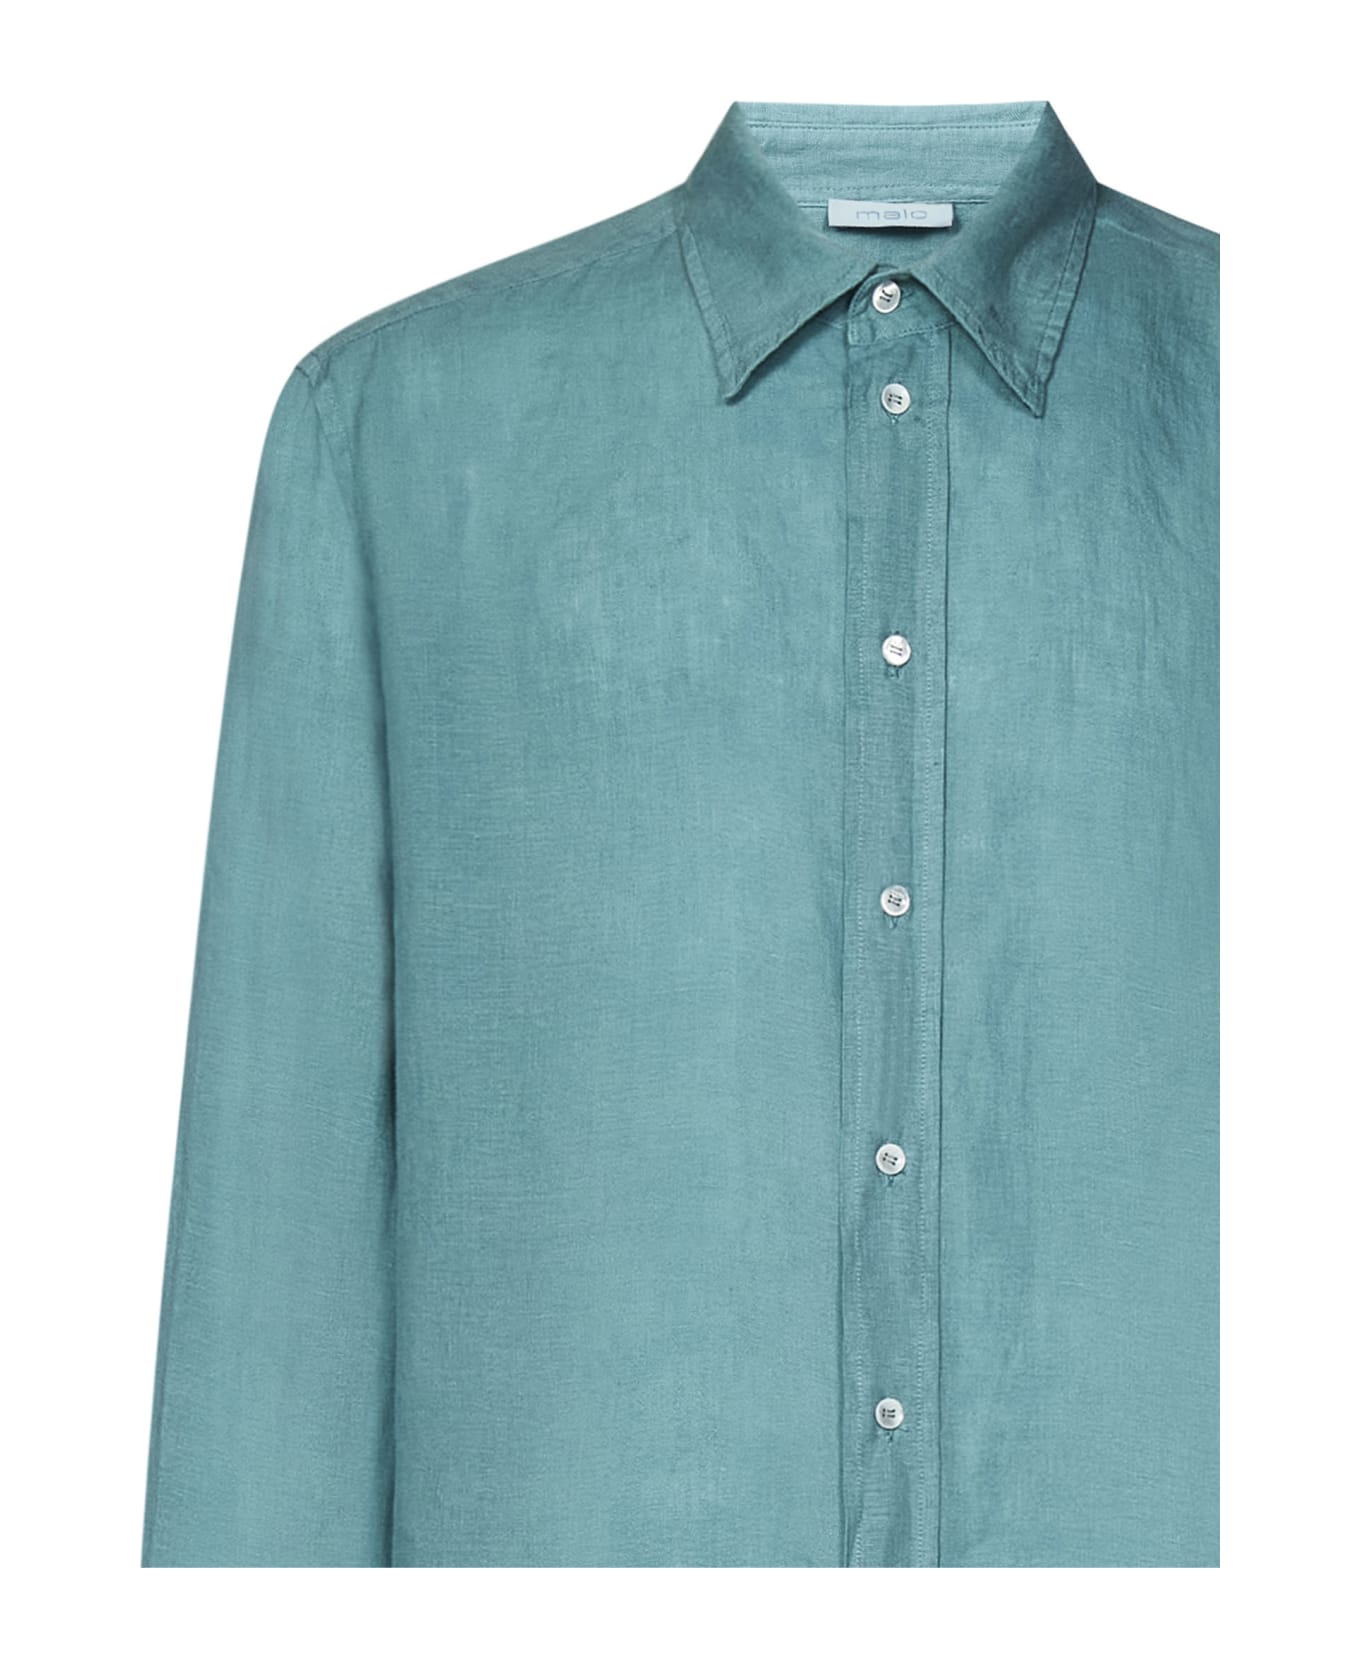 Malo Shirt - Turquoise